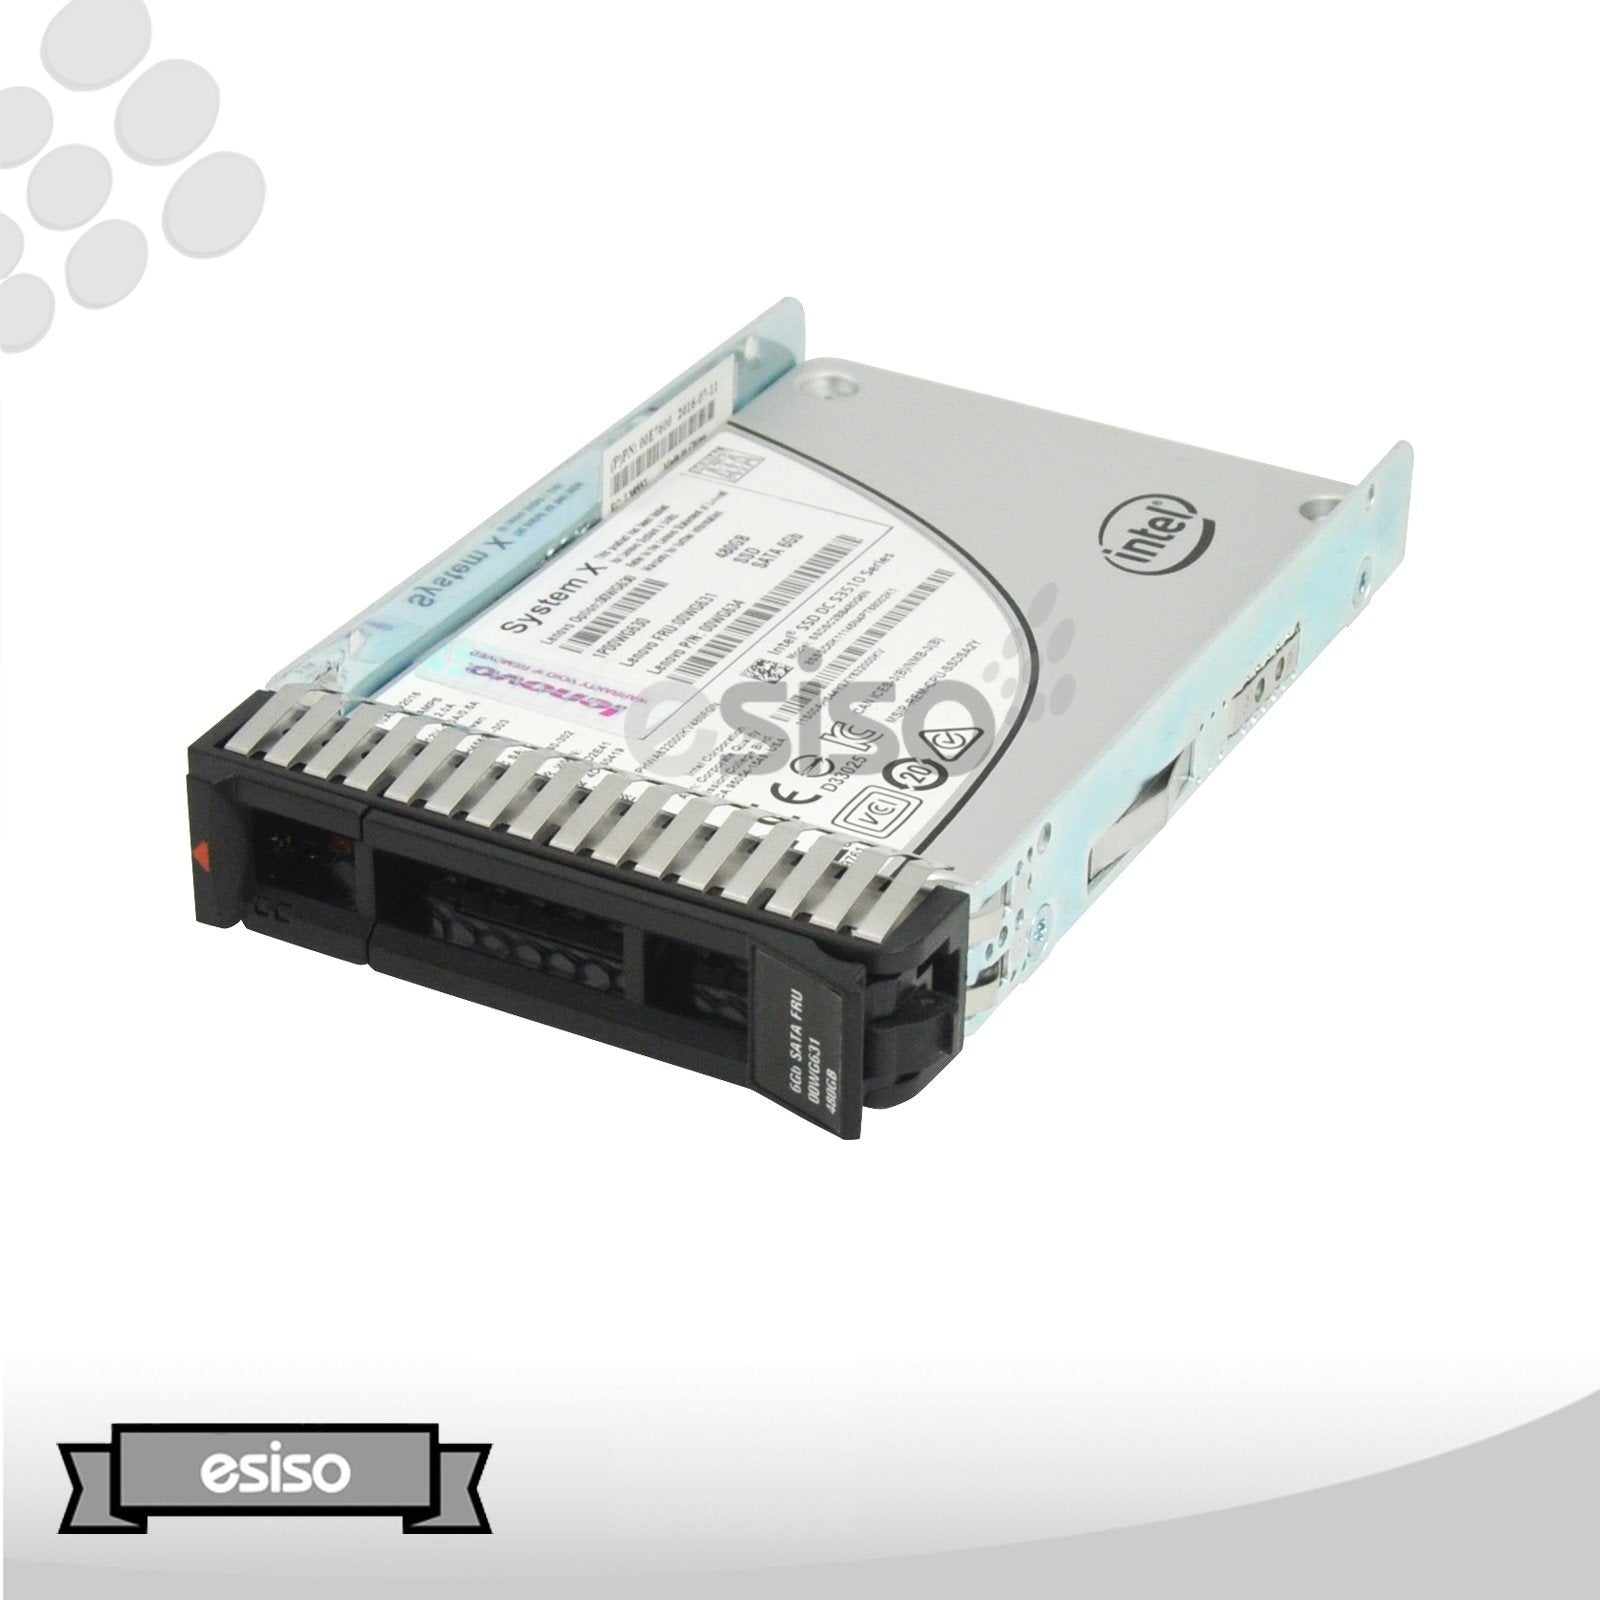 00WG631 00WG630 00WG634 LENOVO 480GB 6G 2.5" SATA INTEL SSD DC S3510 SERIES SSD